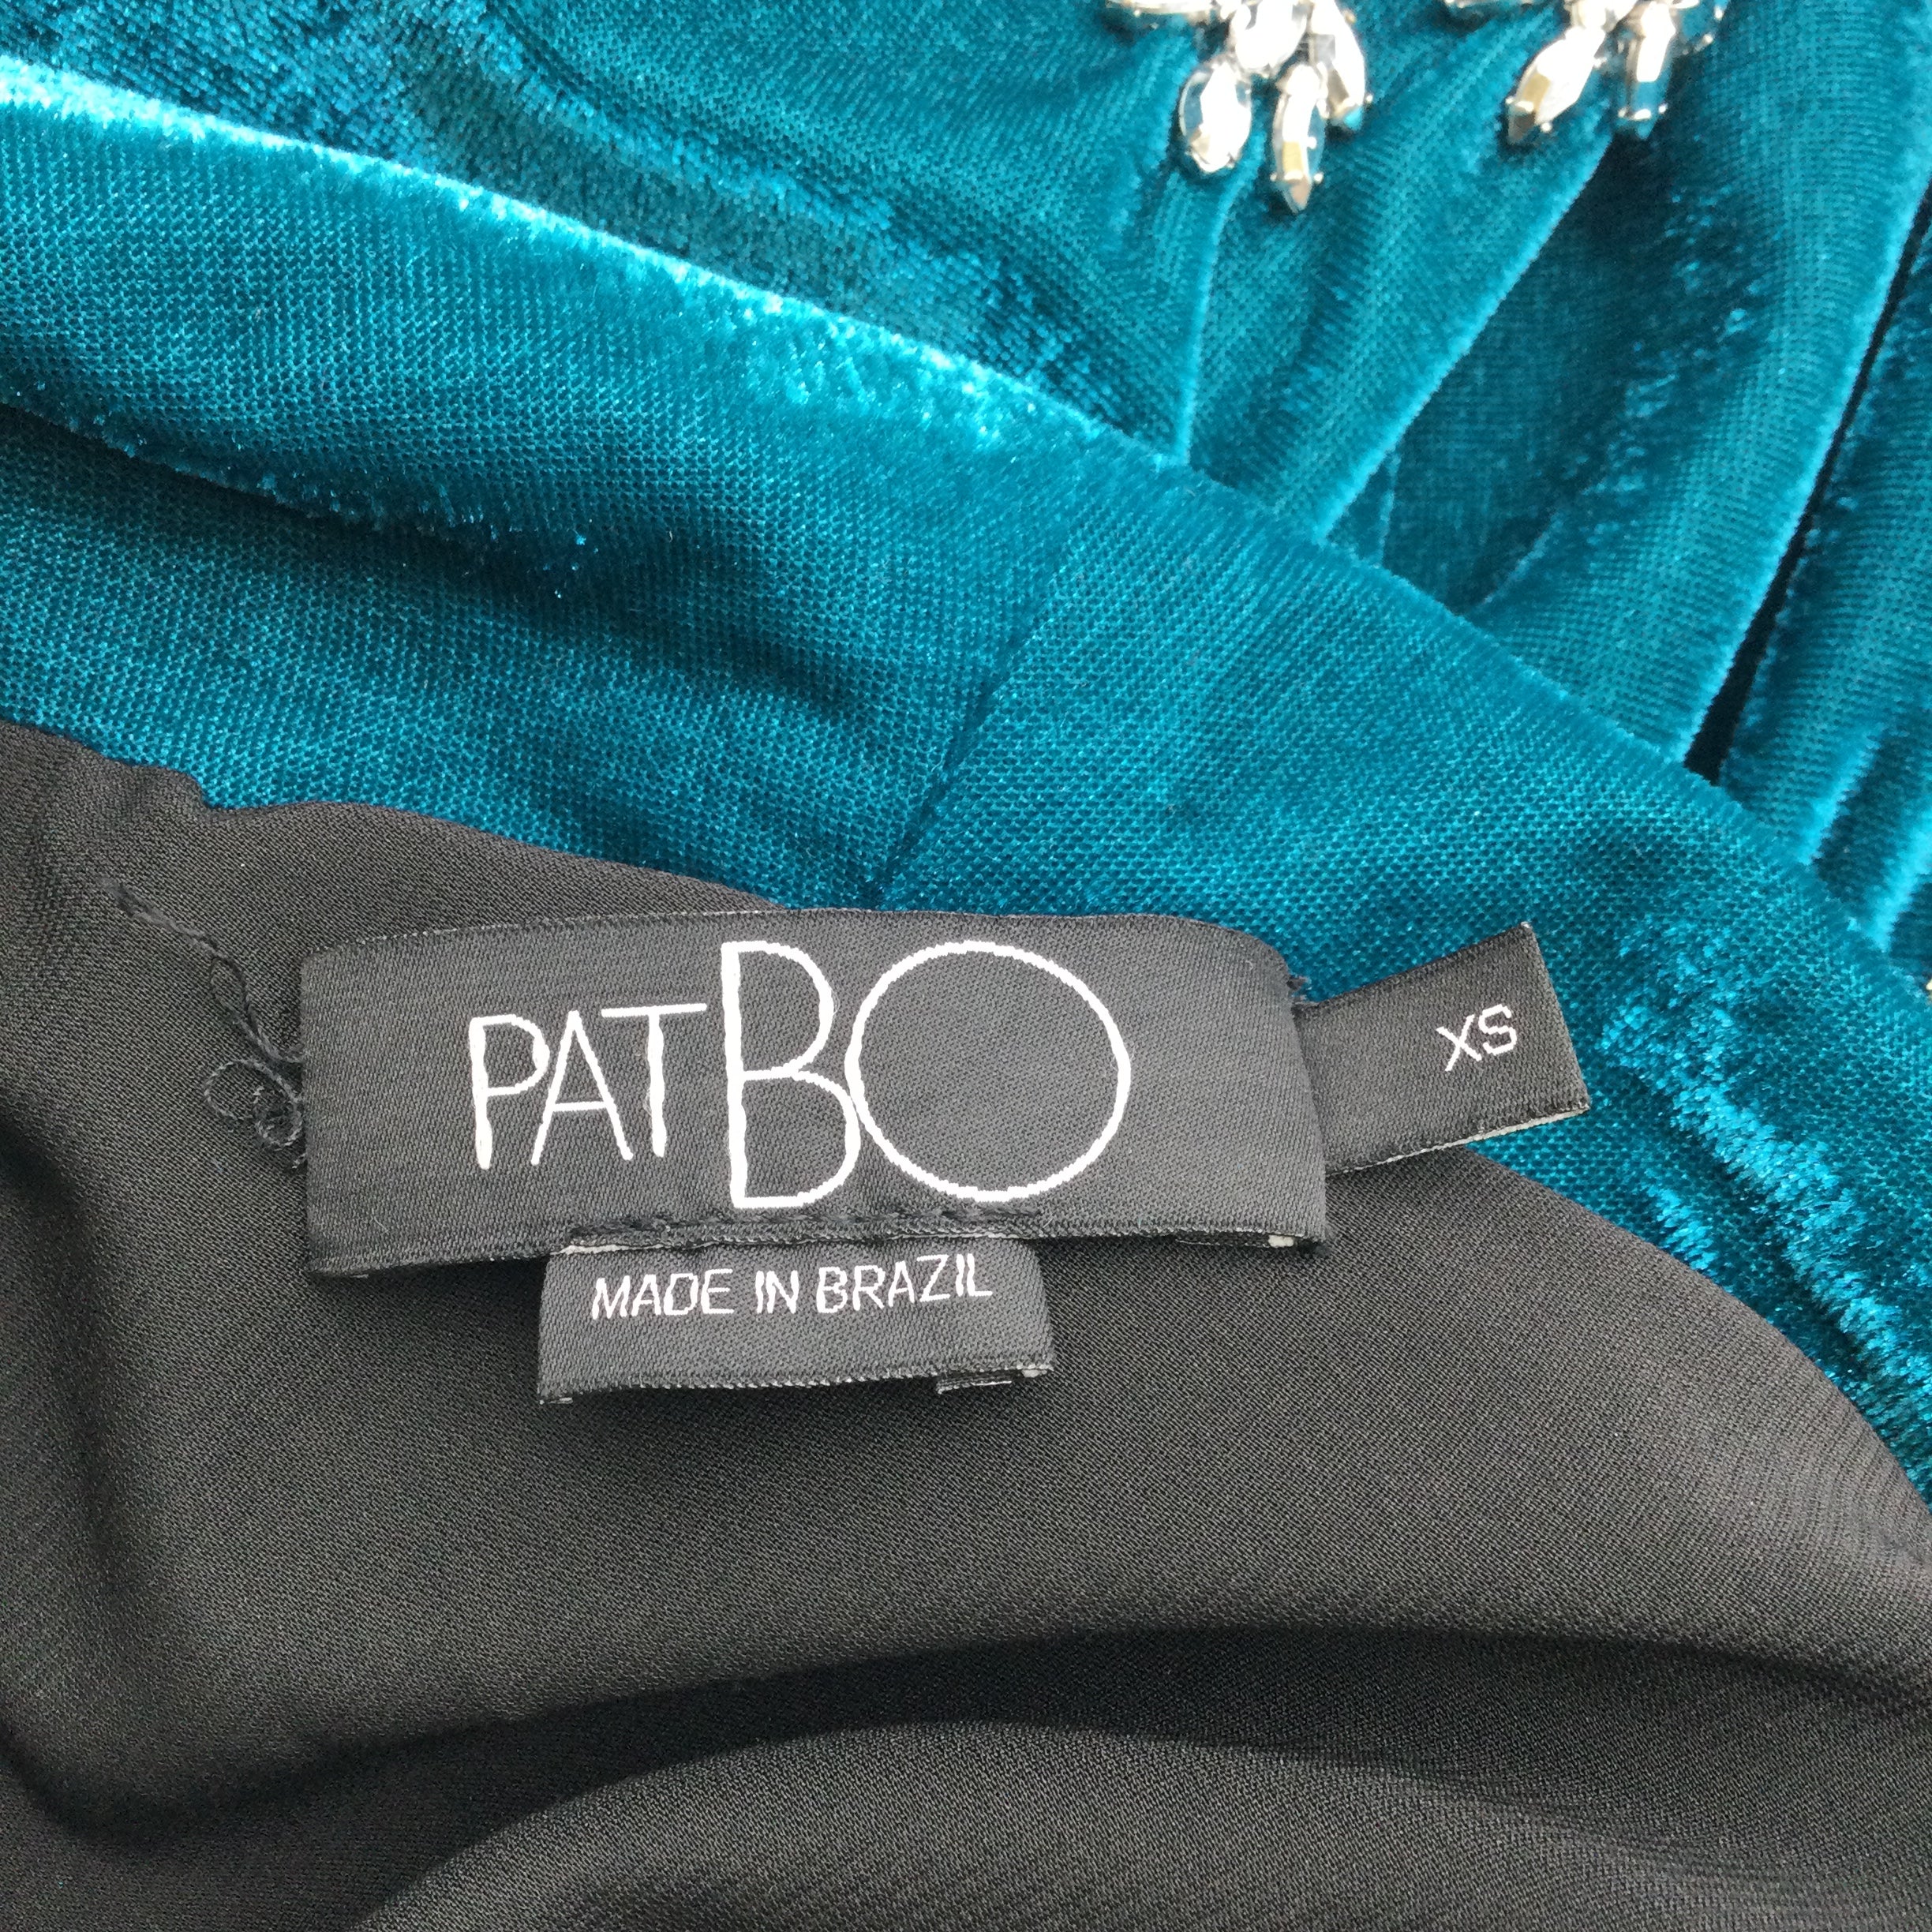 PatBO Teal Embellished Velvet Jacket